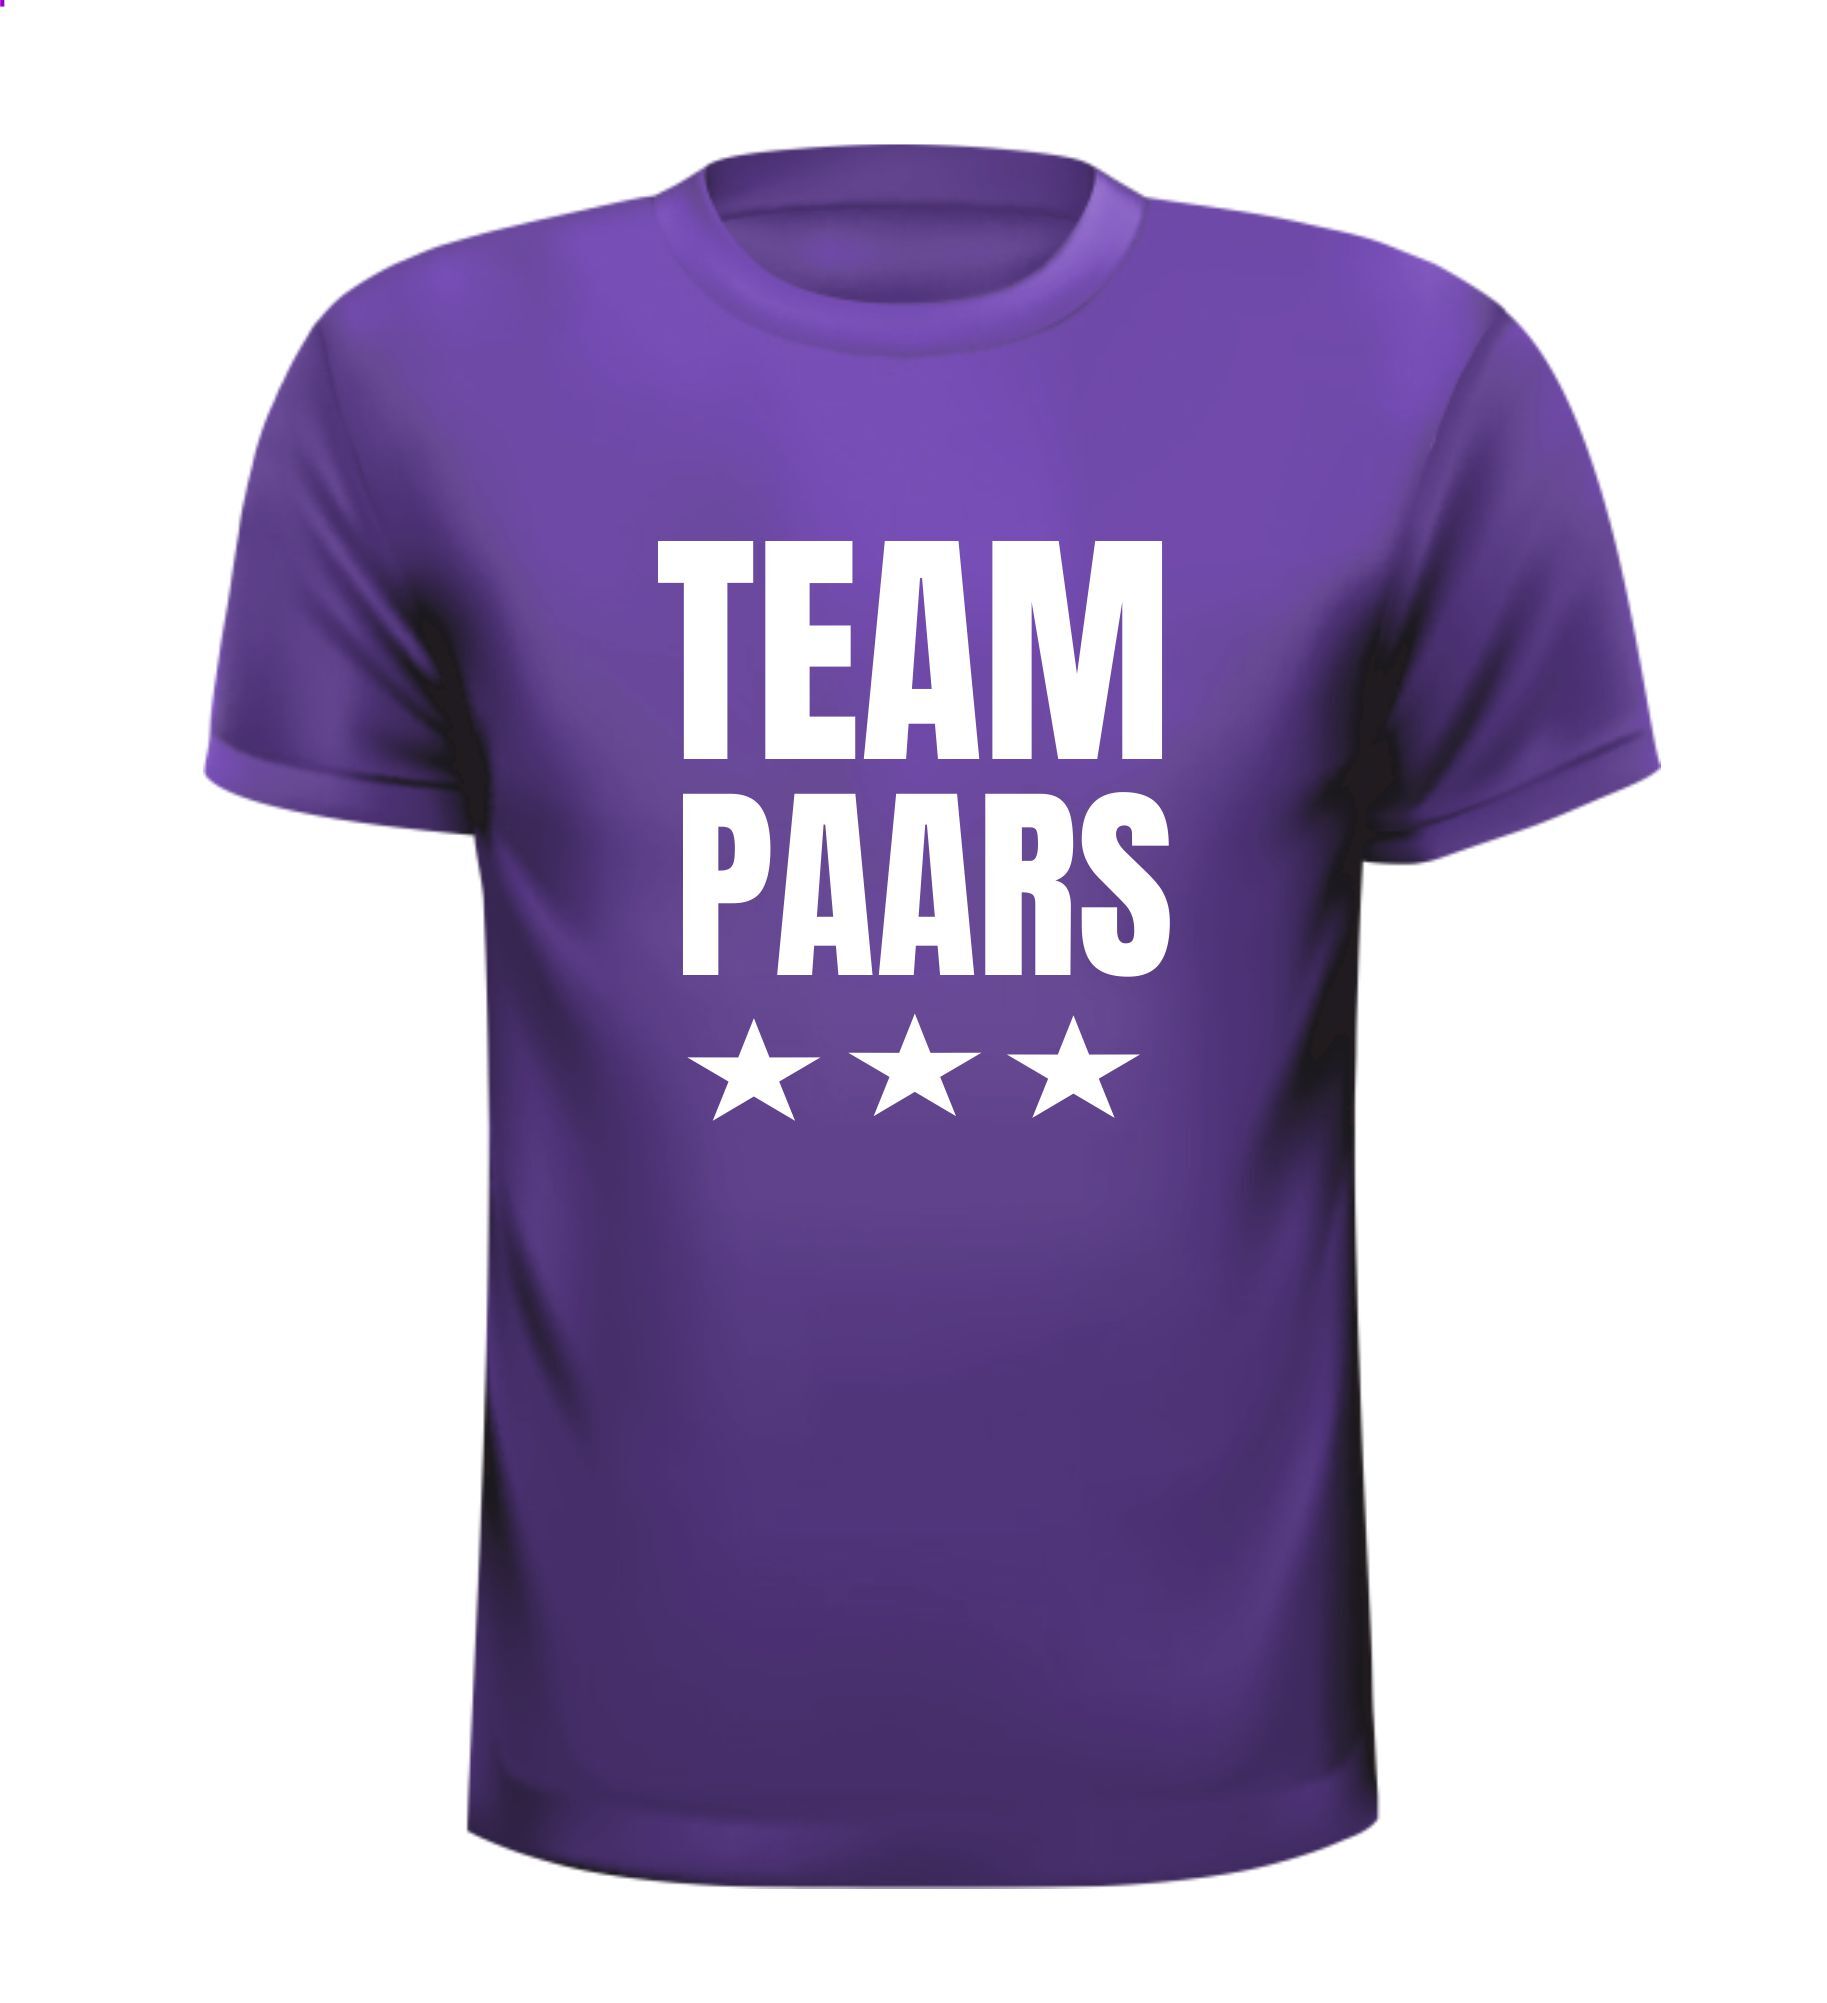 Shirtje voor Team paars